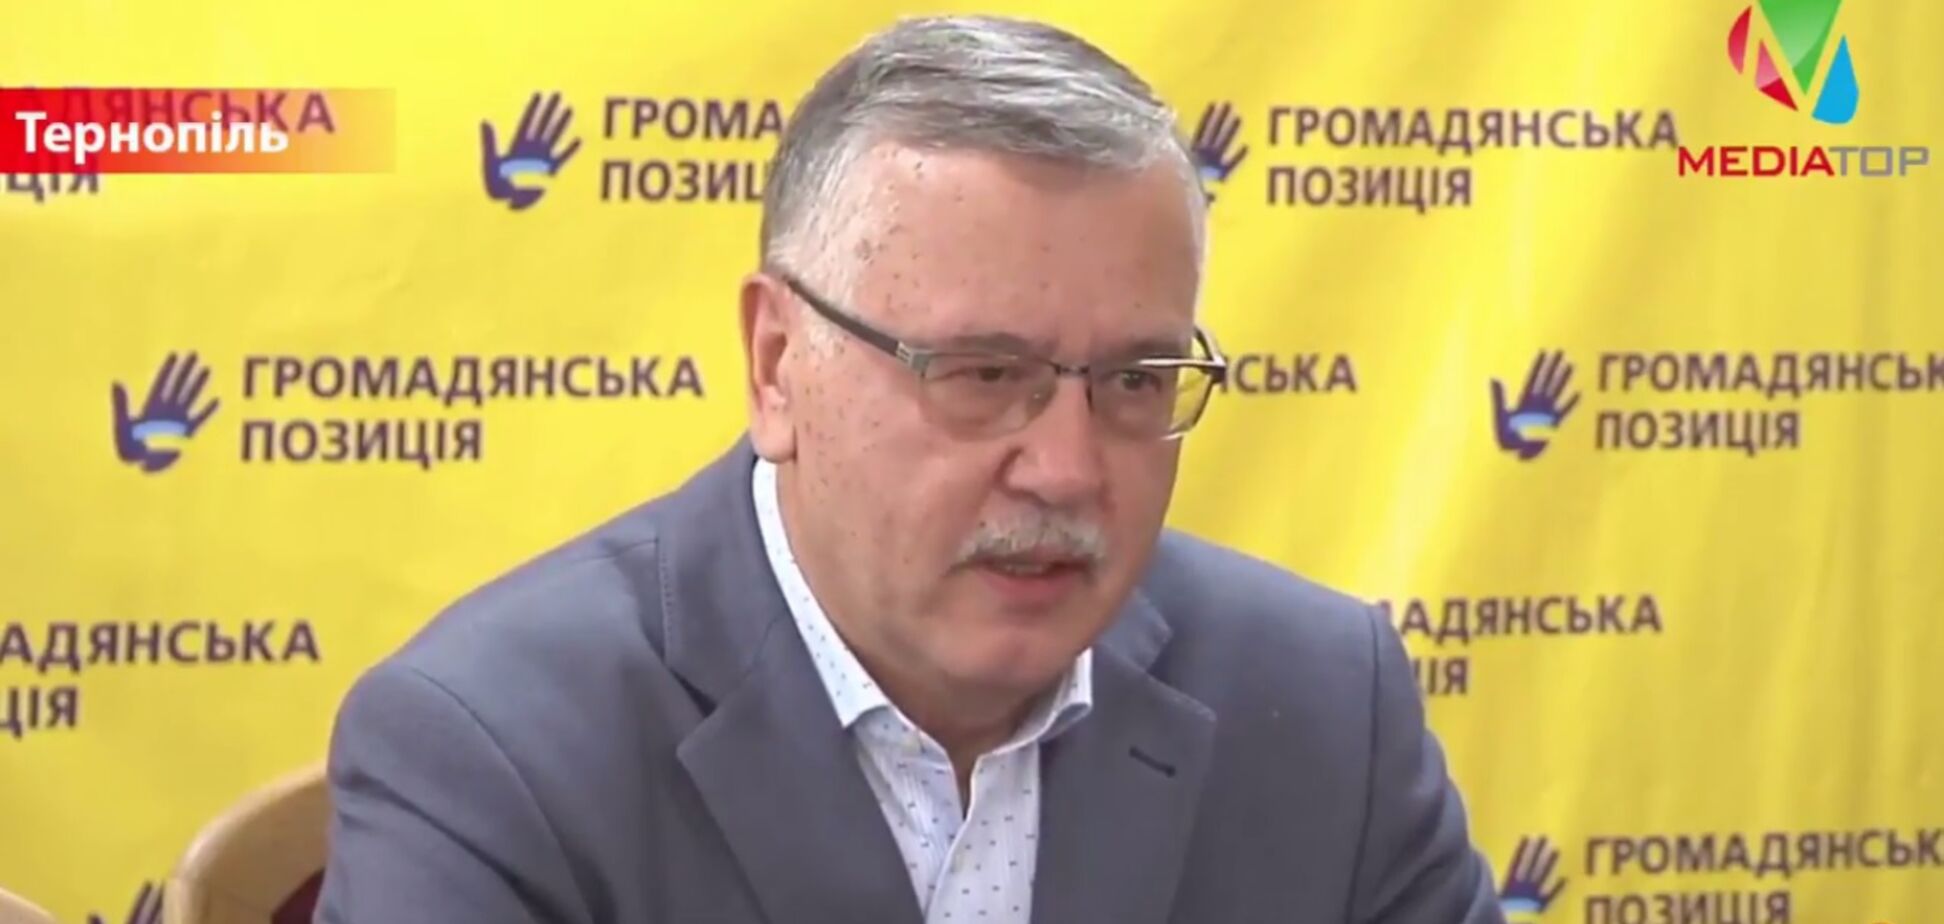 Гриценко вызвал Тимошенко на публичные дебаты